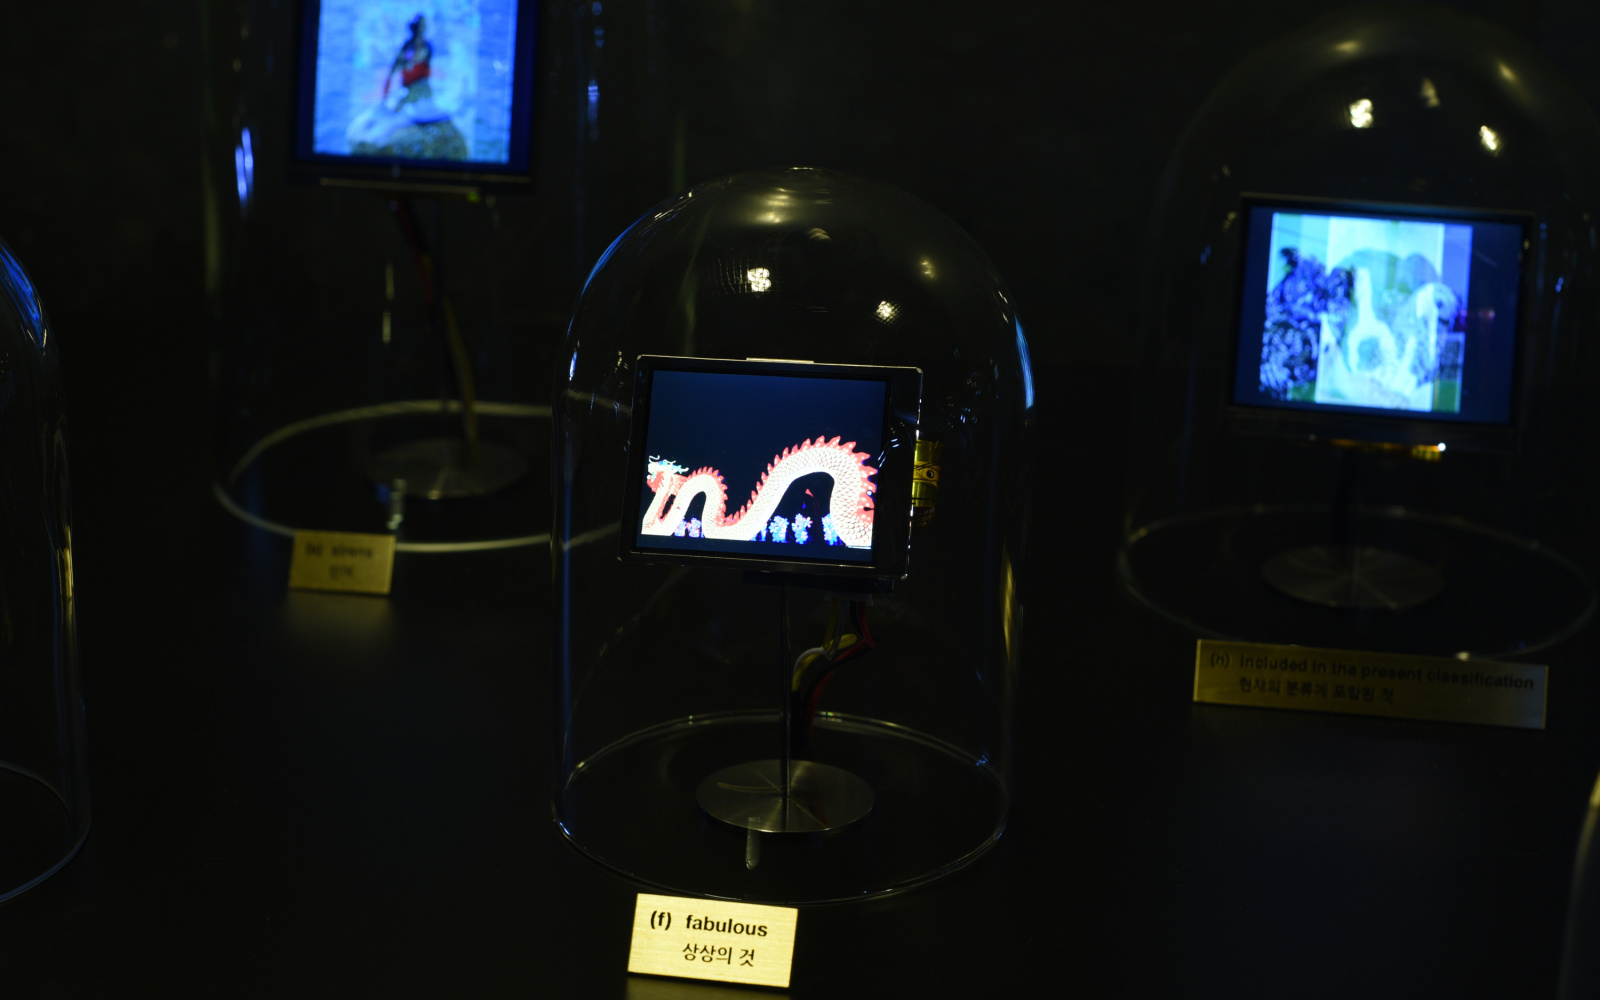 Das Foto zeigt eine Glasglocke in der ein kleiner Bildschirm steckt. Auf diesem ist ein Drachen ähnliches Wesen zu sehen.